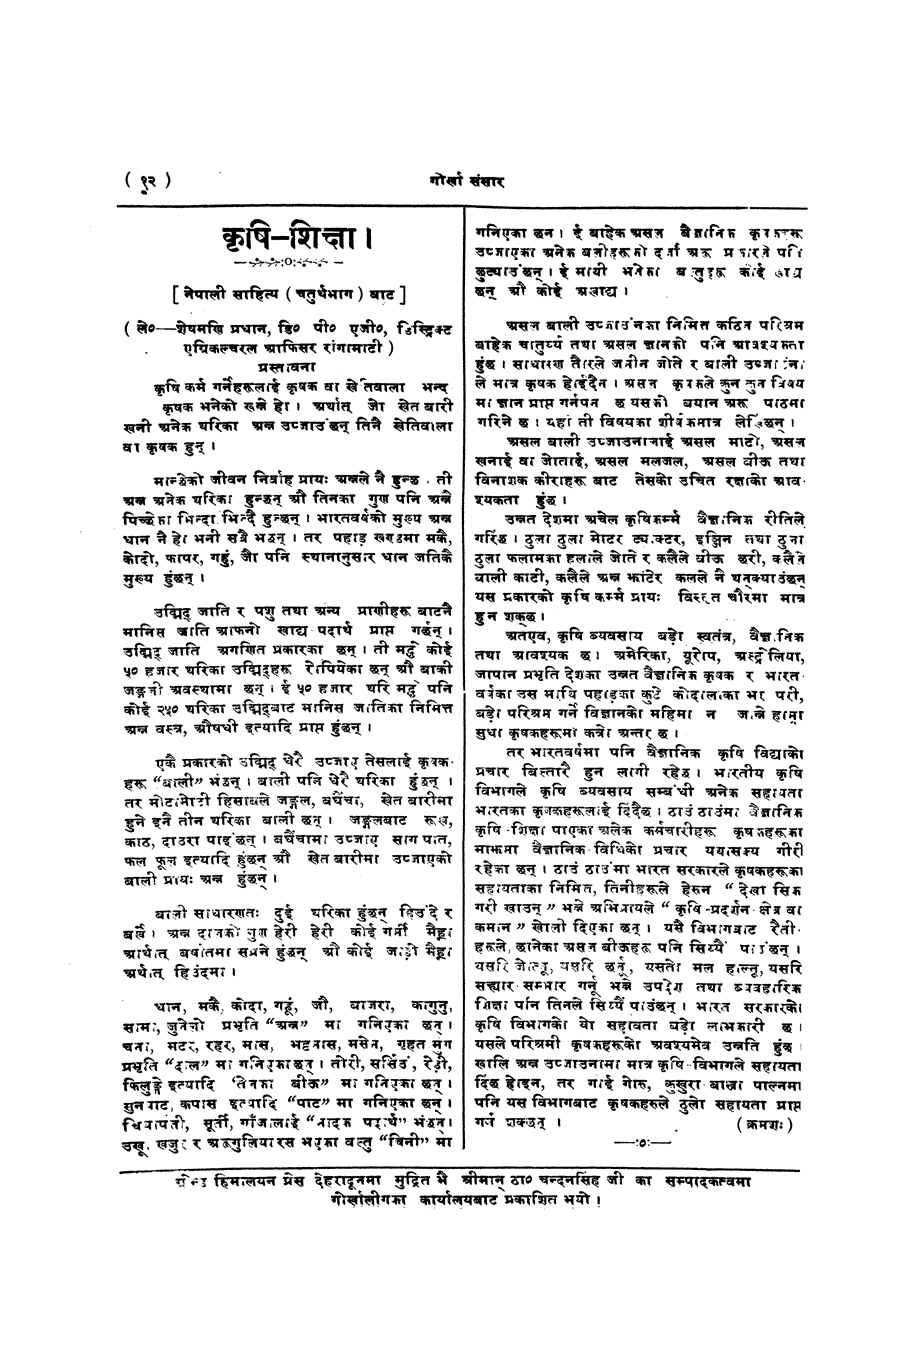 Gorkha Sansar, 22 Feb 1927, page 12